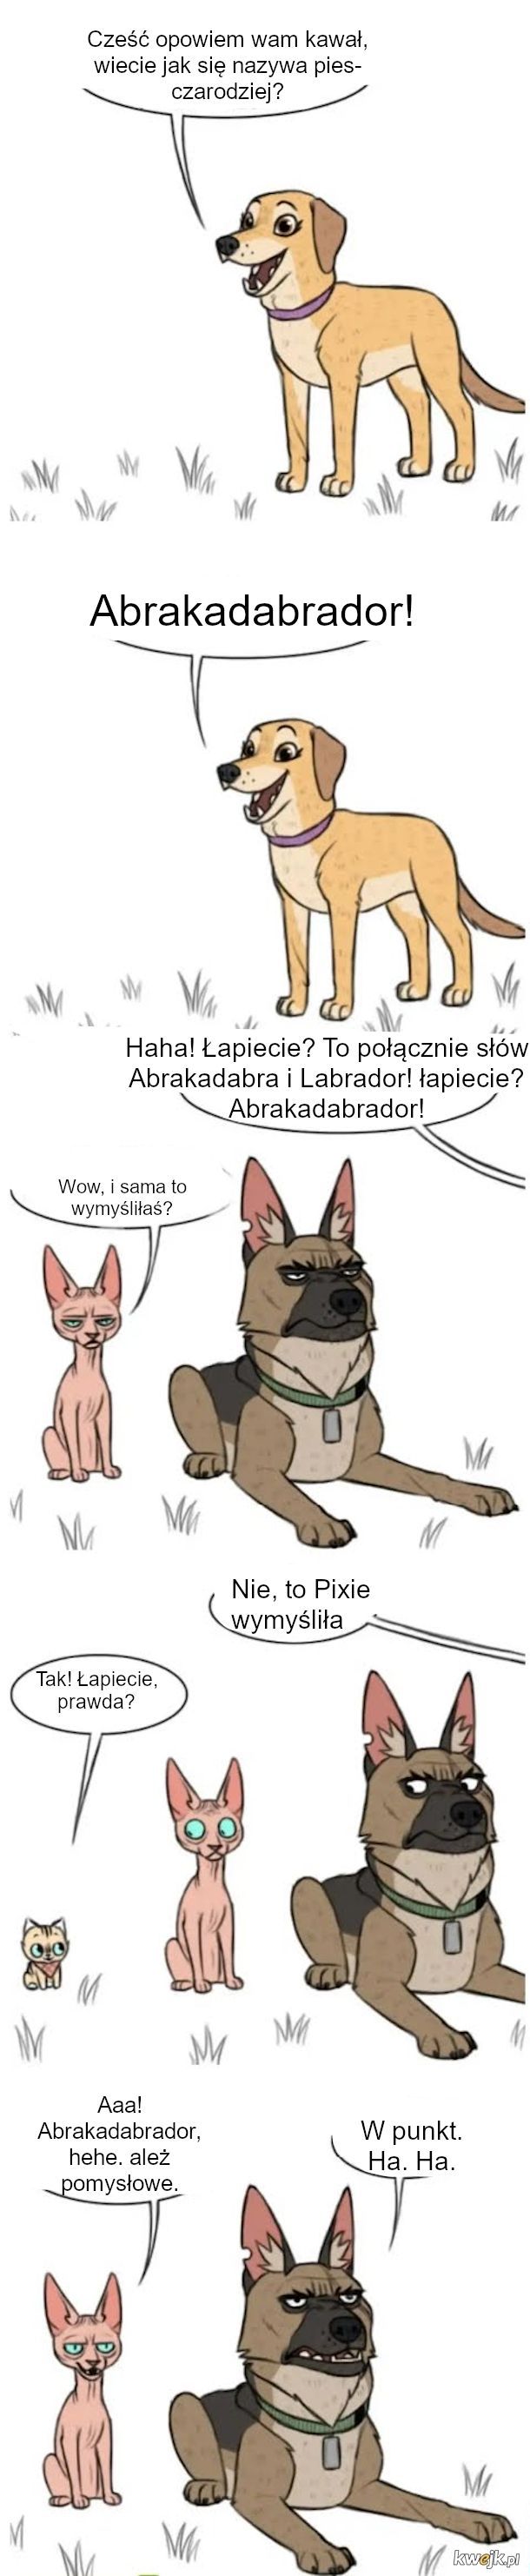 Pixie i Brutus: czyli komiksy o dużym psie i małym kotku, obrazek 6